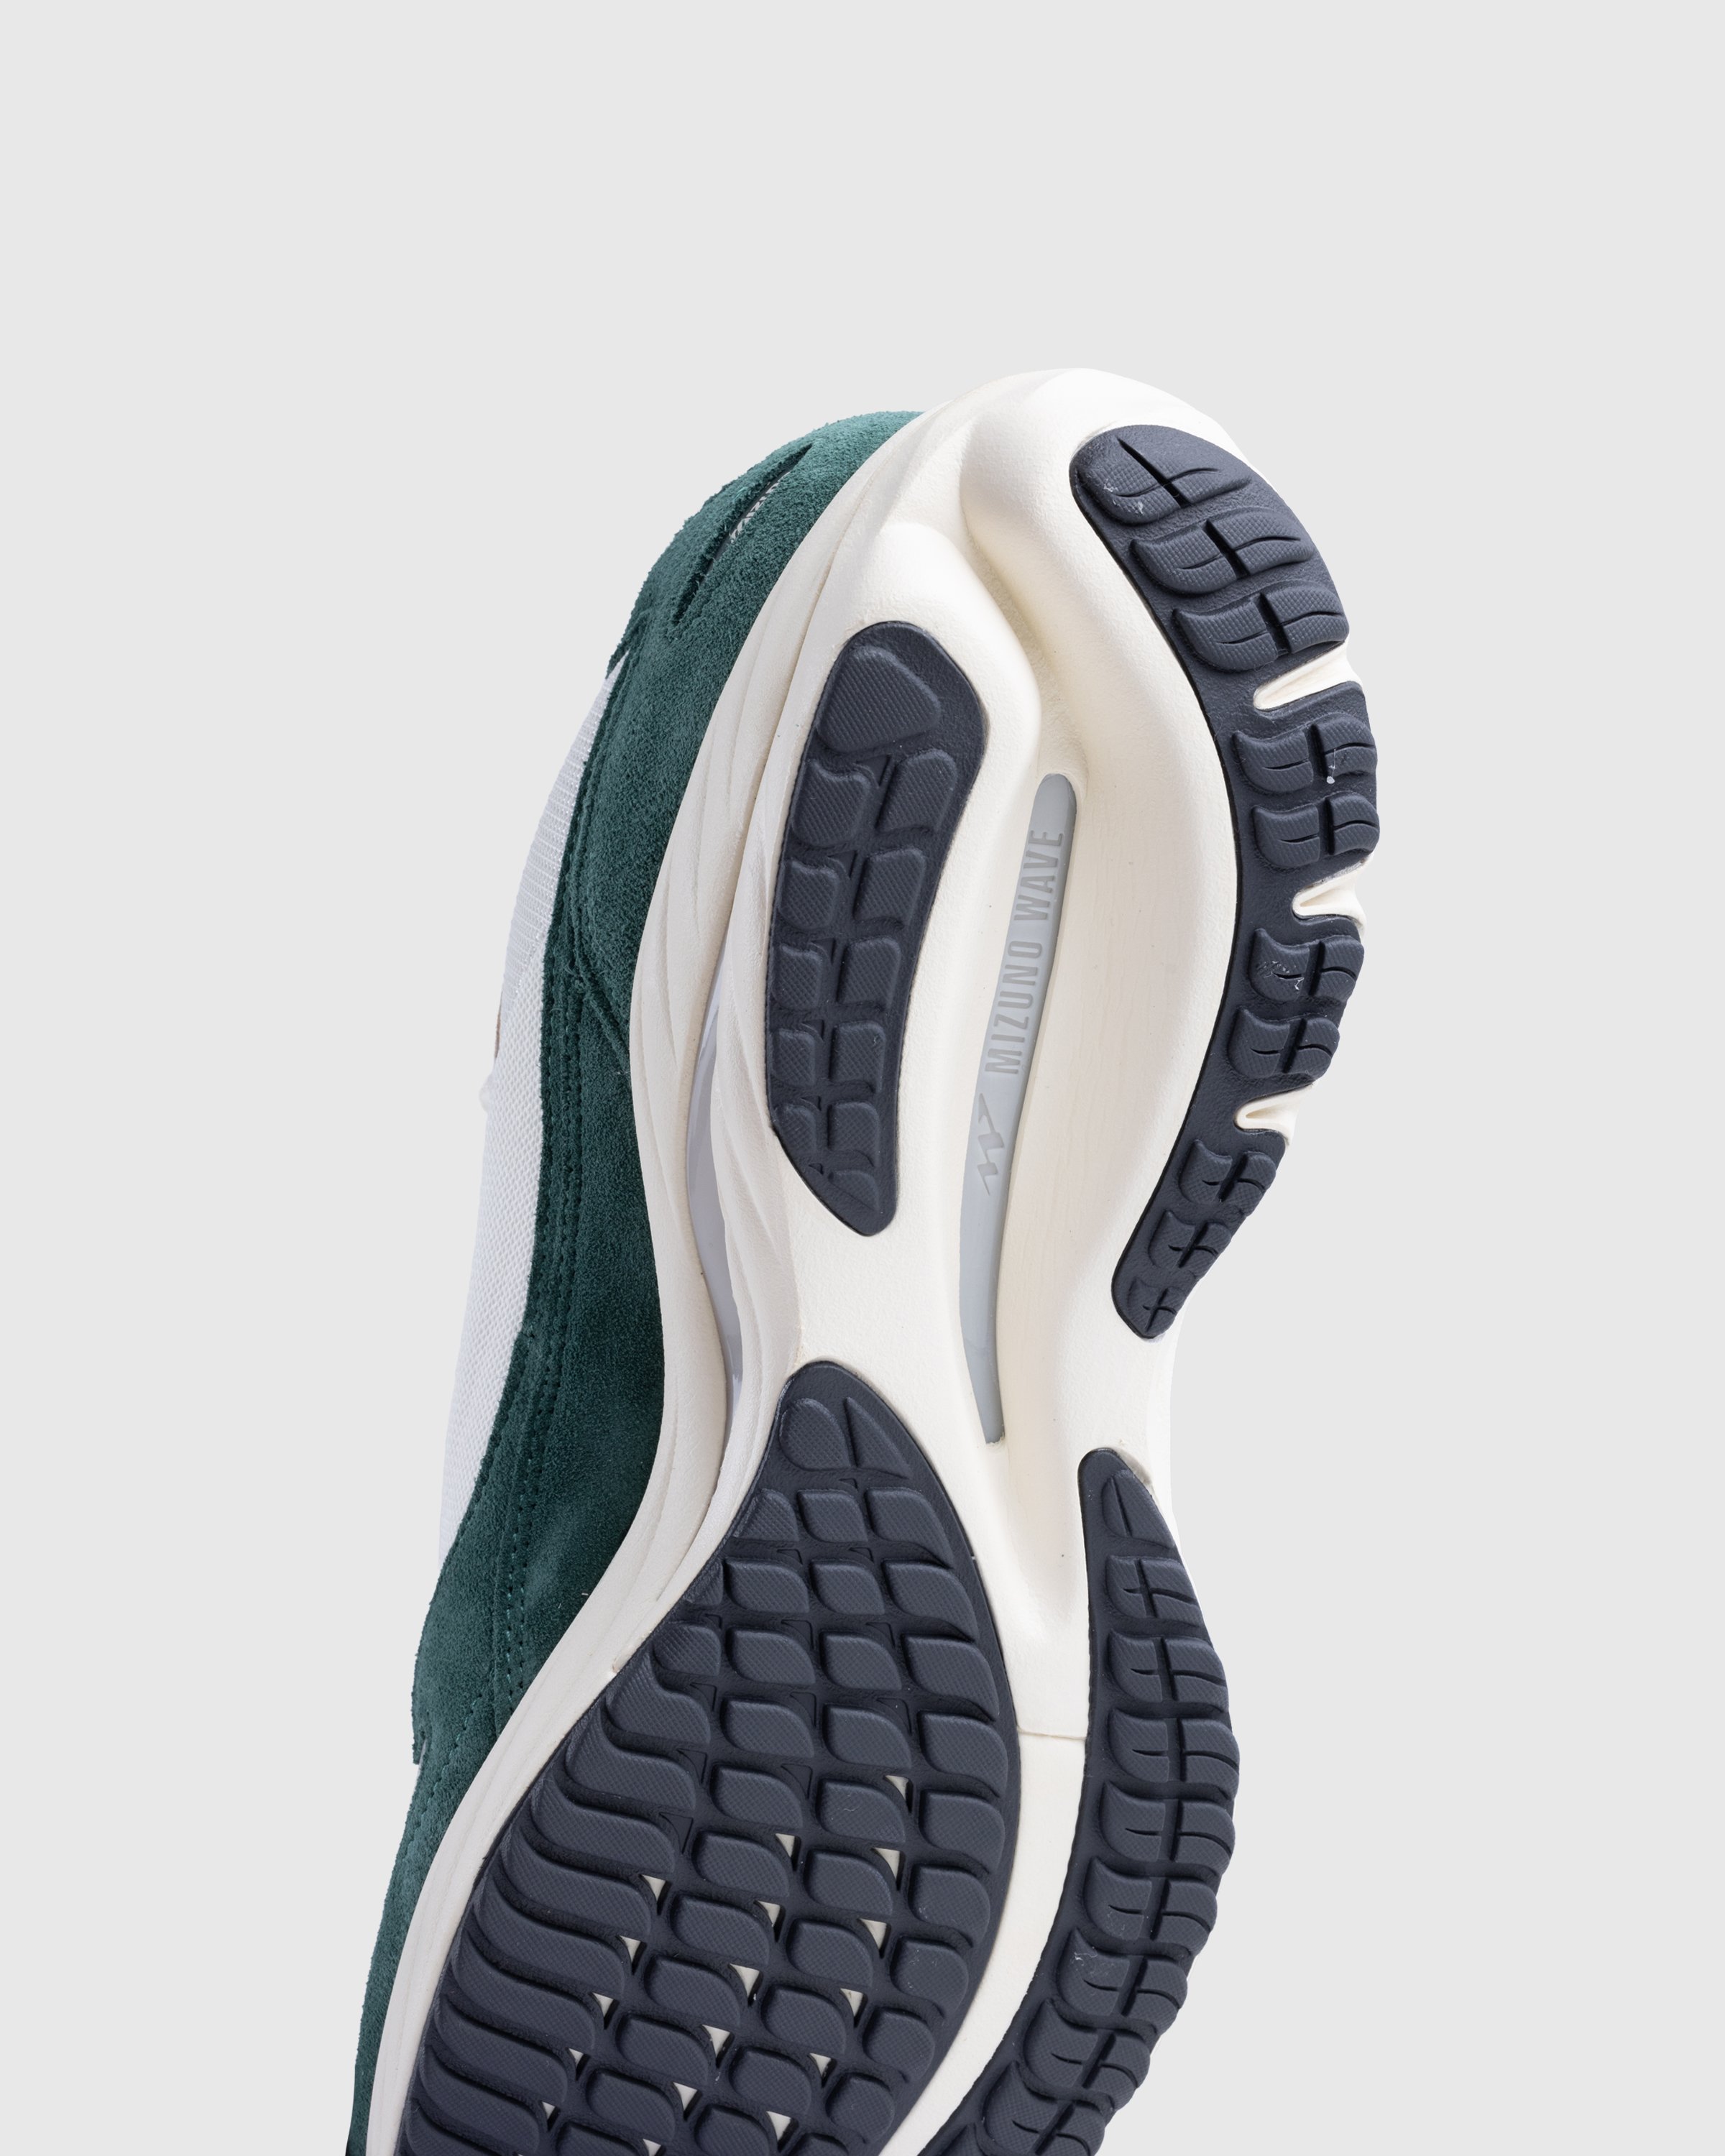 Mizuno - WAVE RIDER BETA(U) - Footwear - Colorway - Image 6